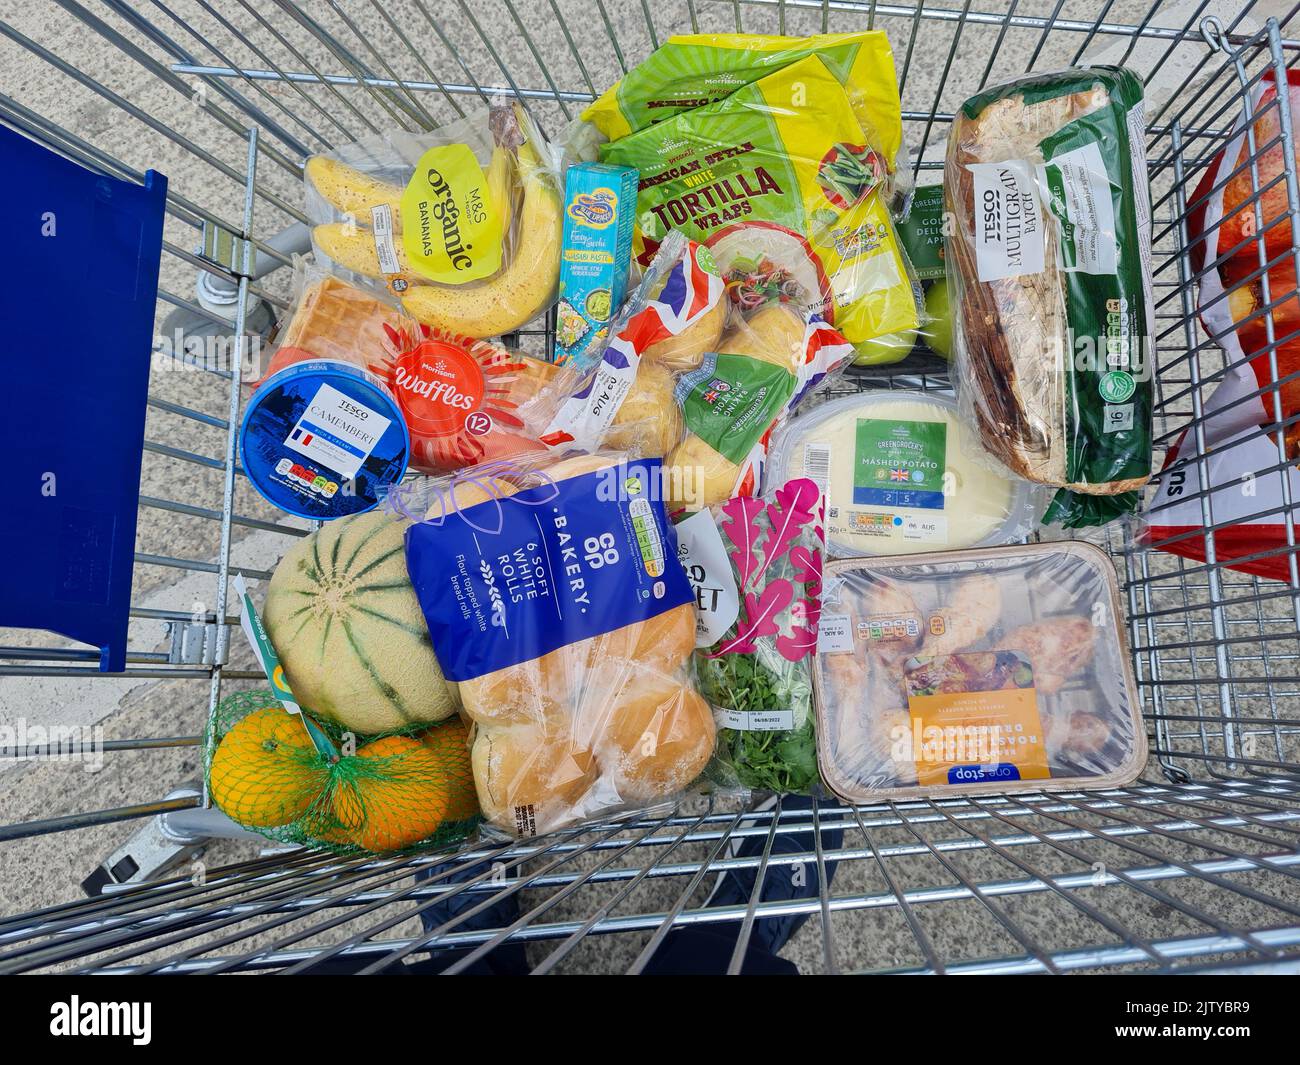 carro de compras mixto de comida de varios supermercados de una tienda que se especializó en comida corta en el reino unido Foto de stock